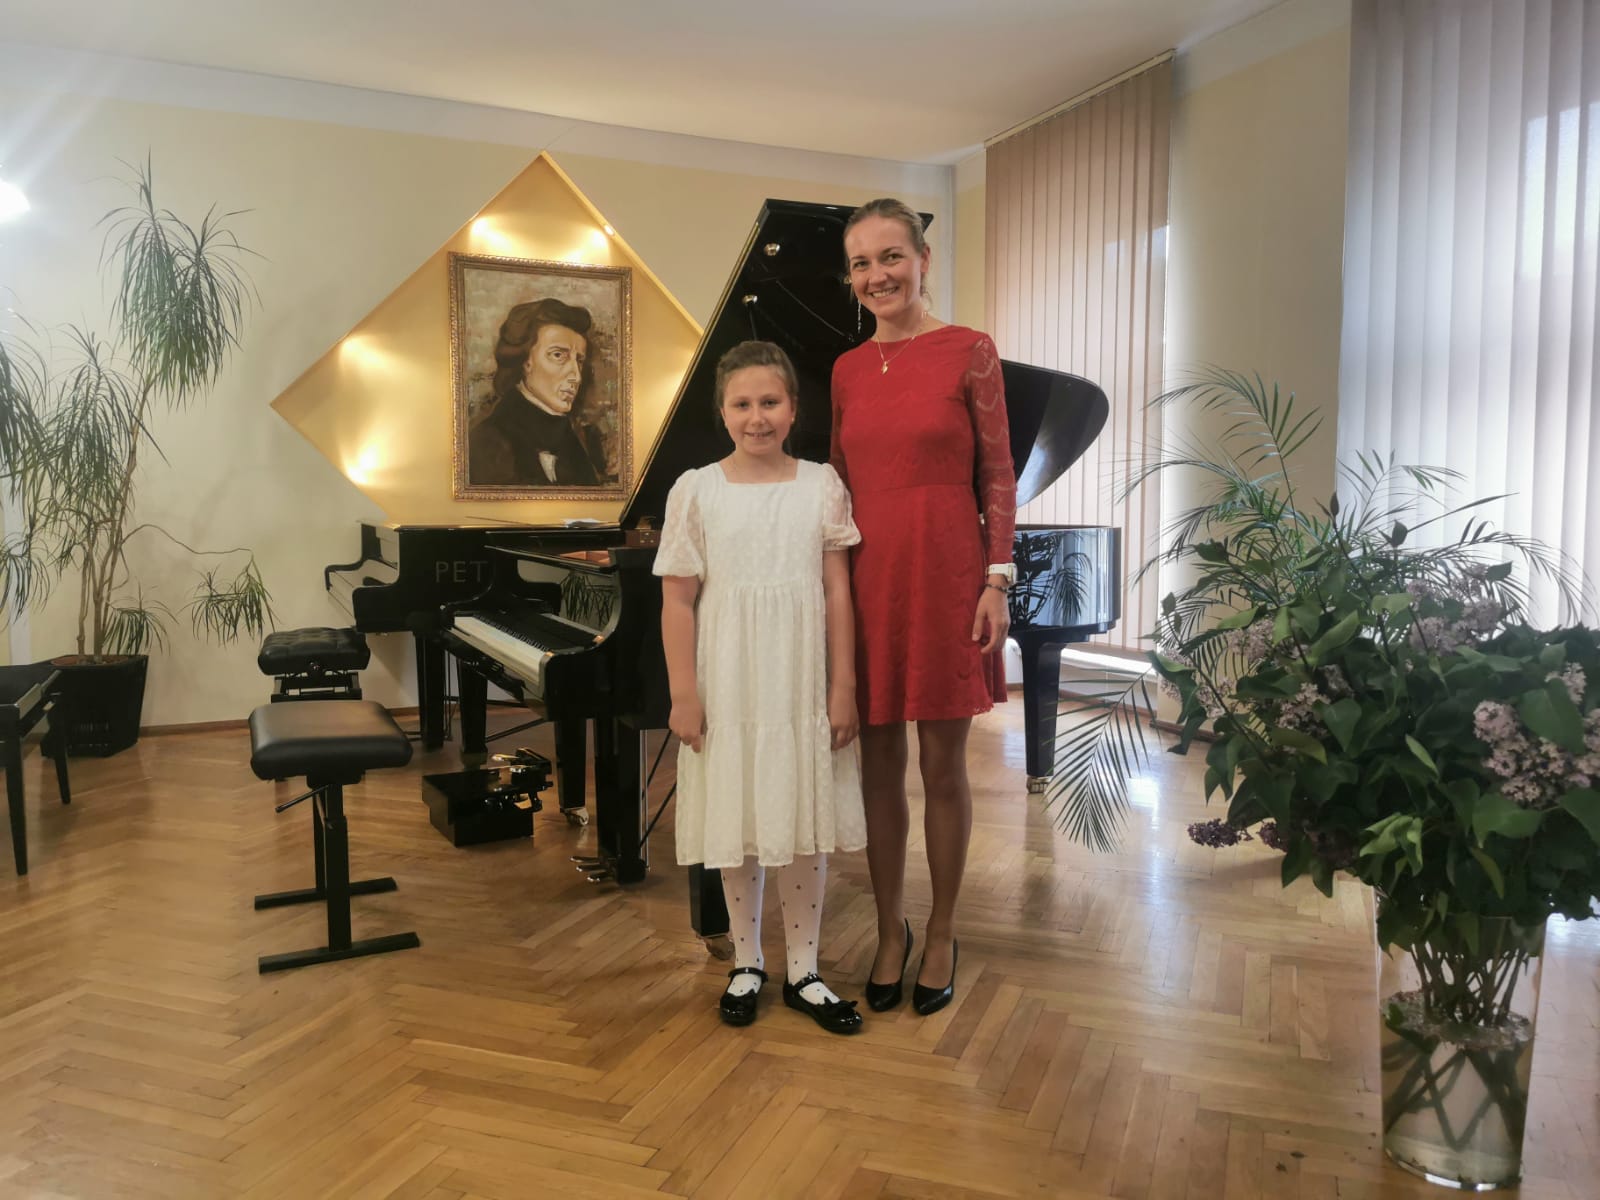 Na zdjęciu widoczna jest elegancko ubrana uczennica wraz z nauczycielką fortepianu, Panią Martą Łysyganicz. W tle widoczne są dwa fortepiany oraz obraz przedstawiający Fryderyka Chopina.